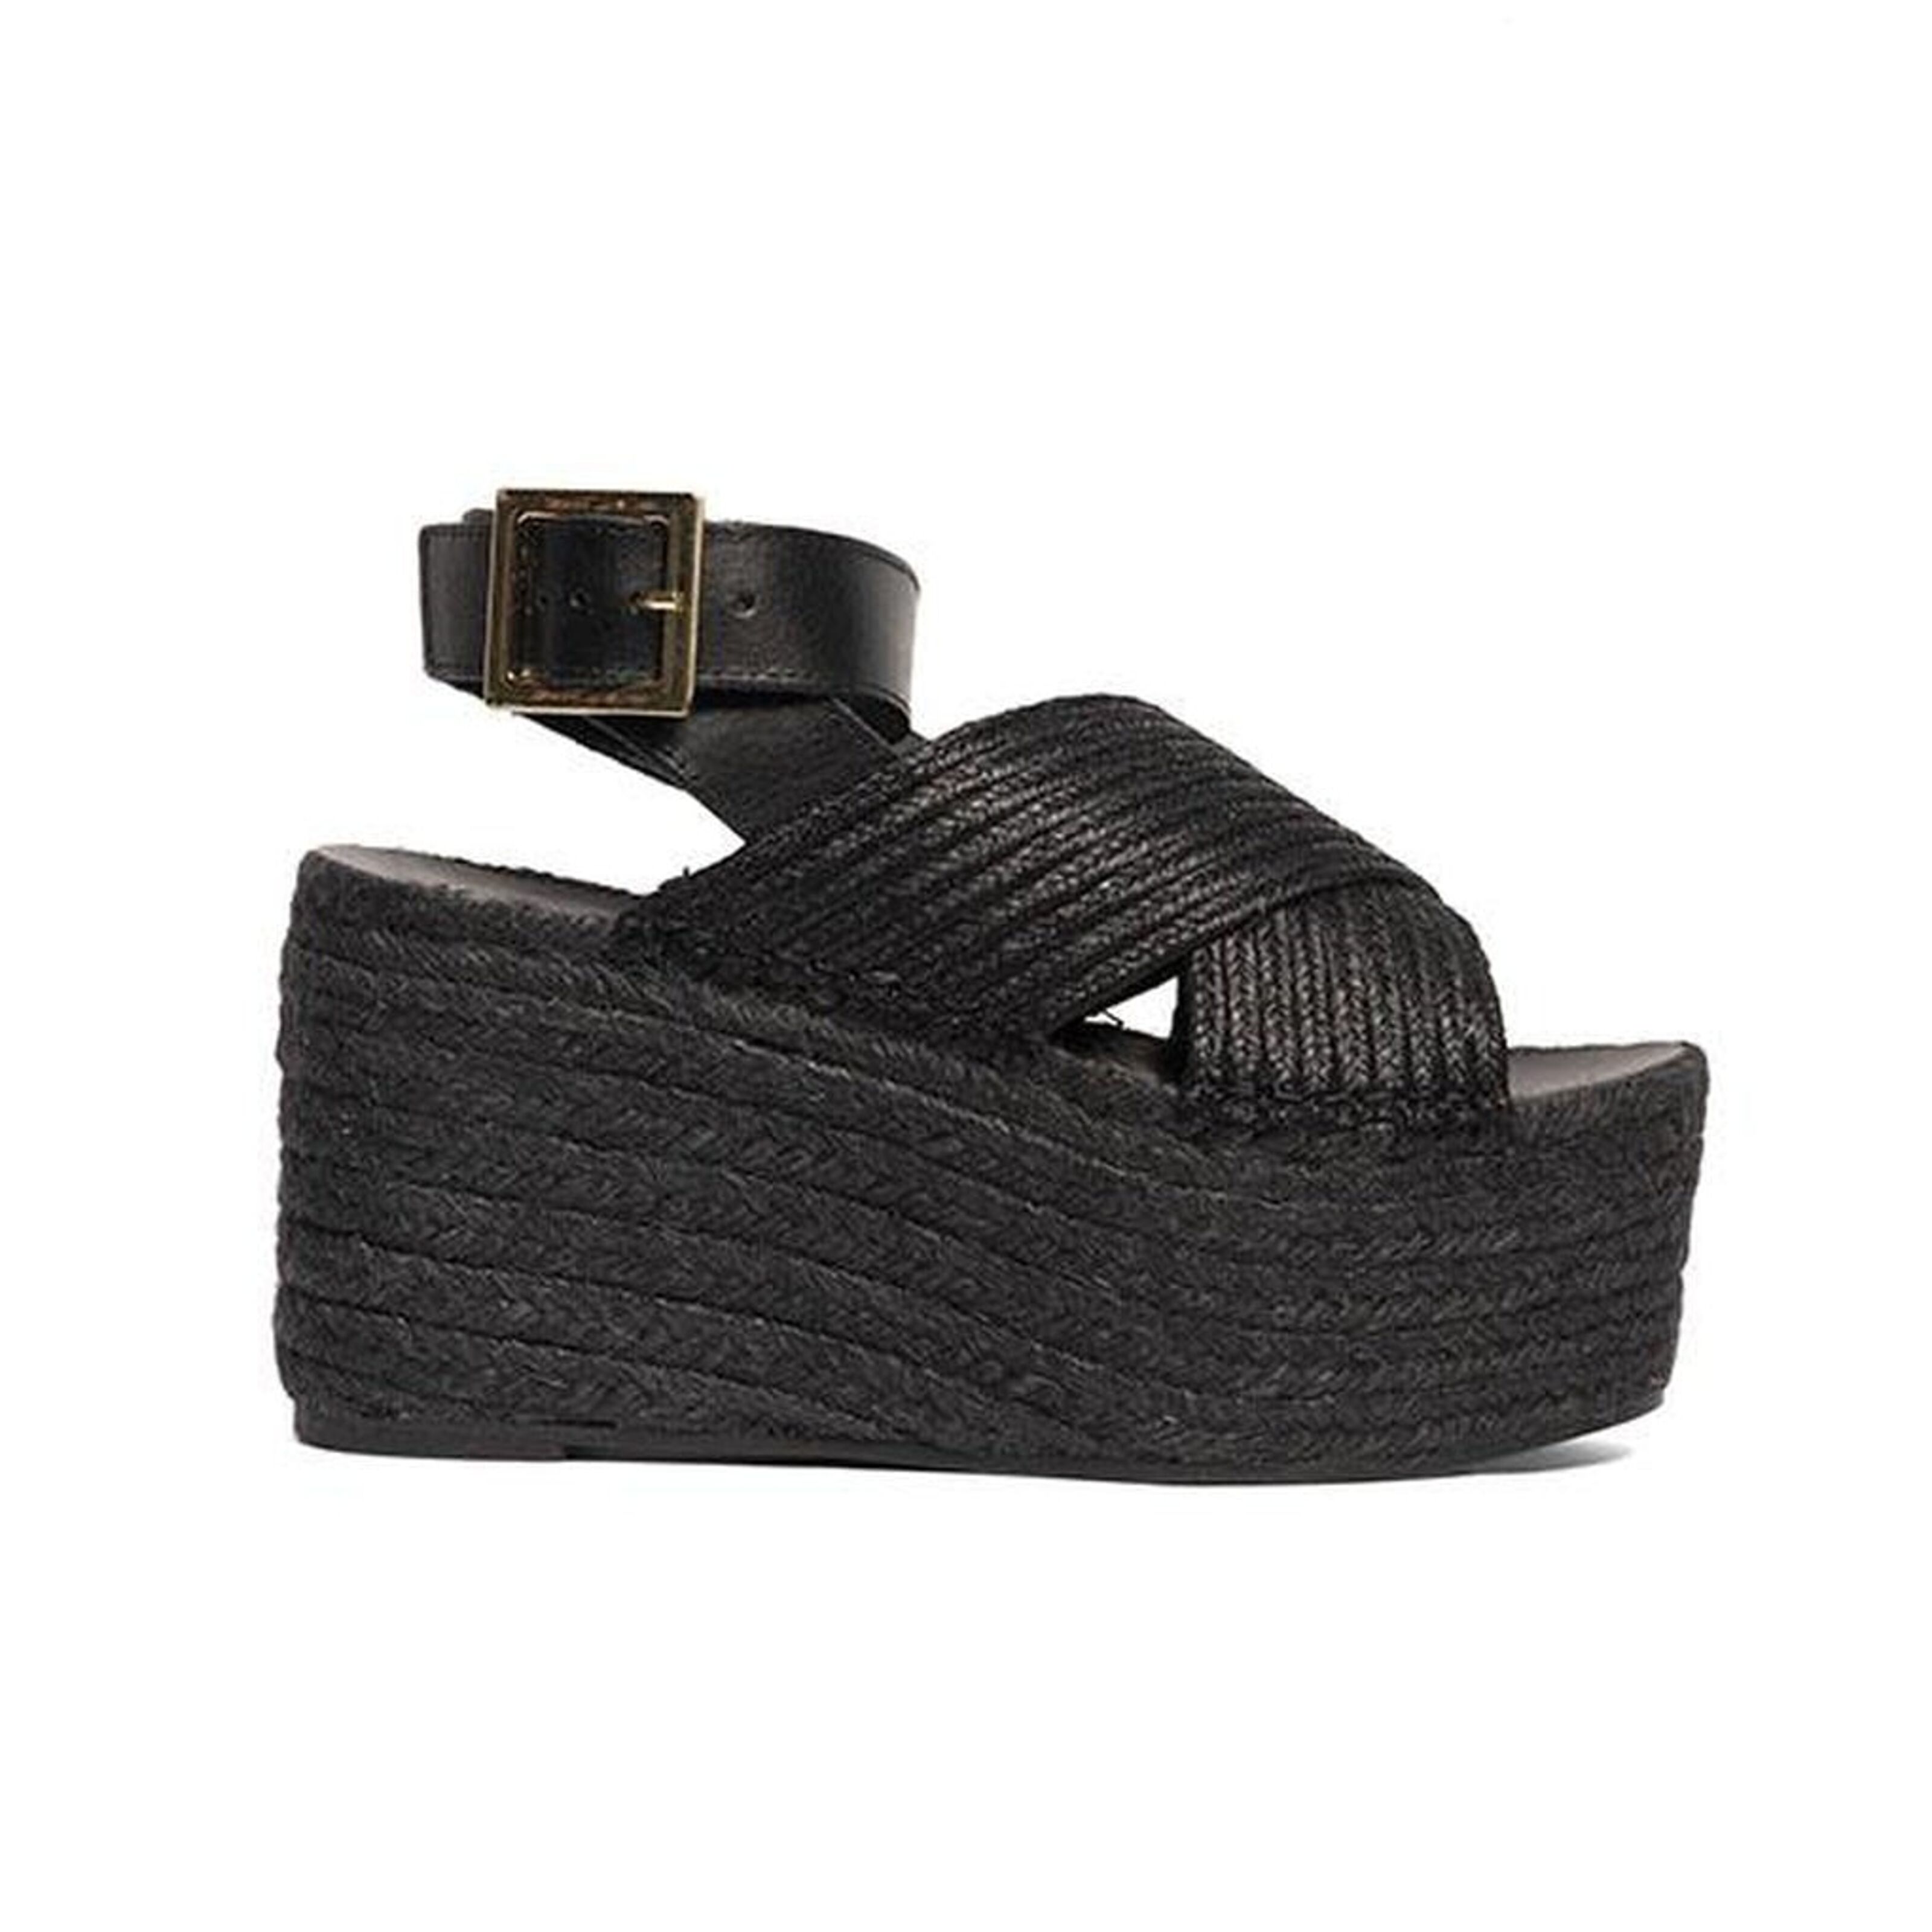 Buy wholesale Wedge sandals Pou Des Lleo Black